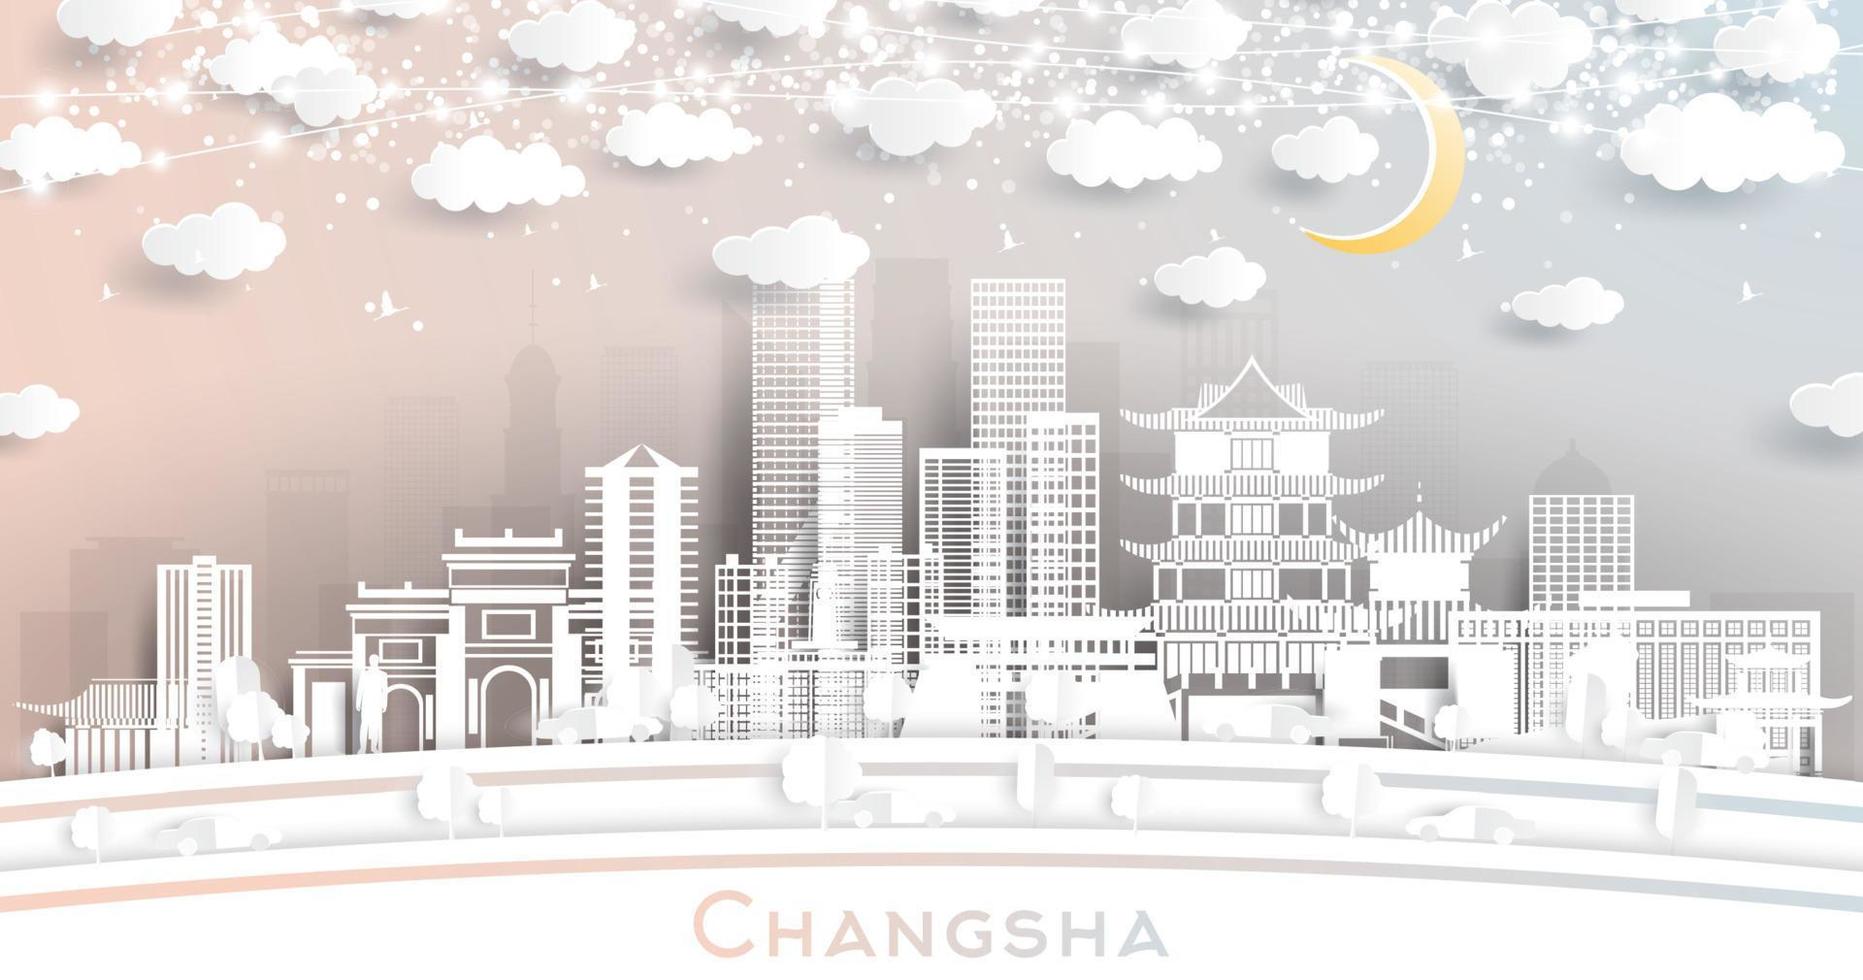 el horizonte de la ciudad china de changsha en estilo de corte de papel con edificios blancos, luna y guirnaldas de neón. vector